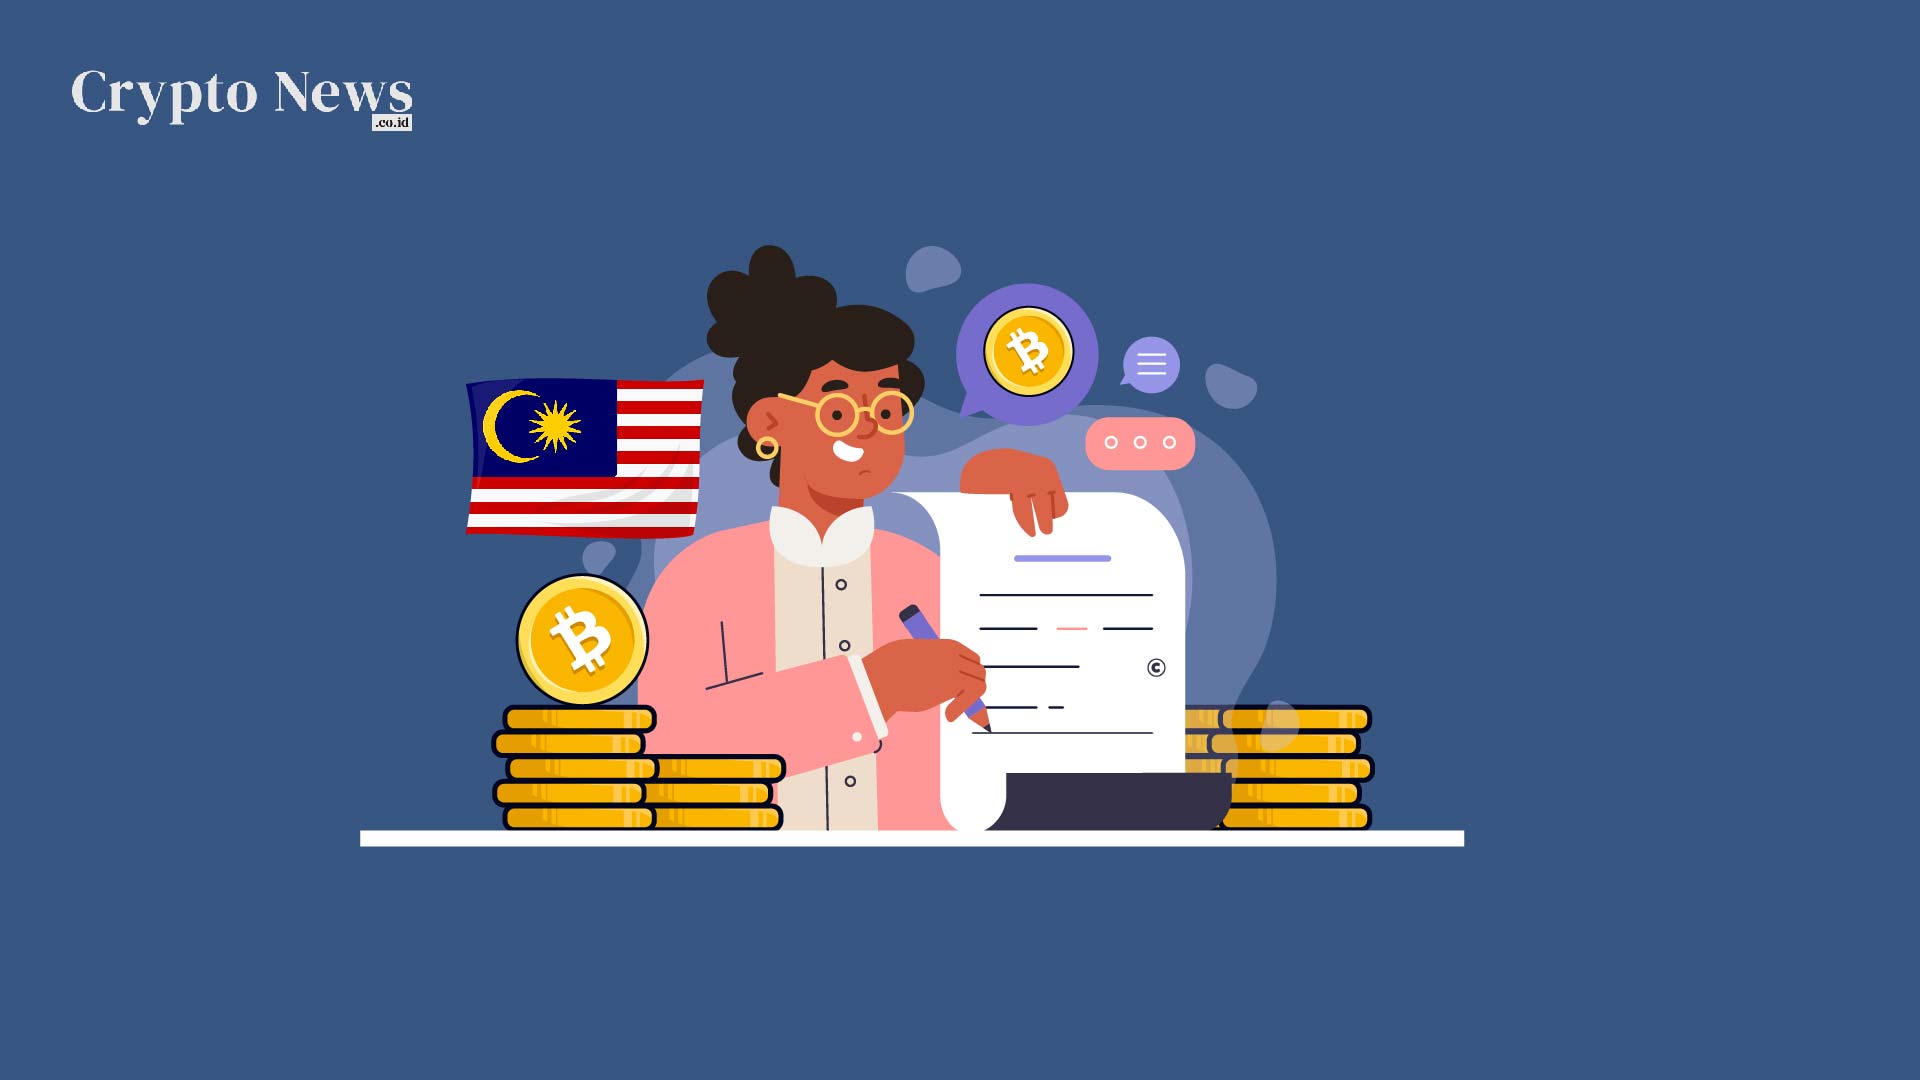 Crypto news indonesia, situs berita cryptocurrency & blockchain - illust : pemerintah malaysia mengusulkan cryptocurrency sebagai mata uang legal